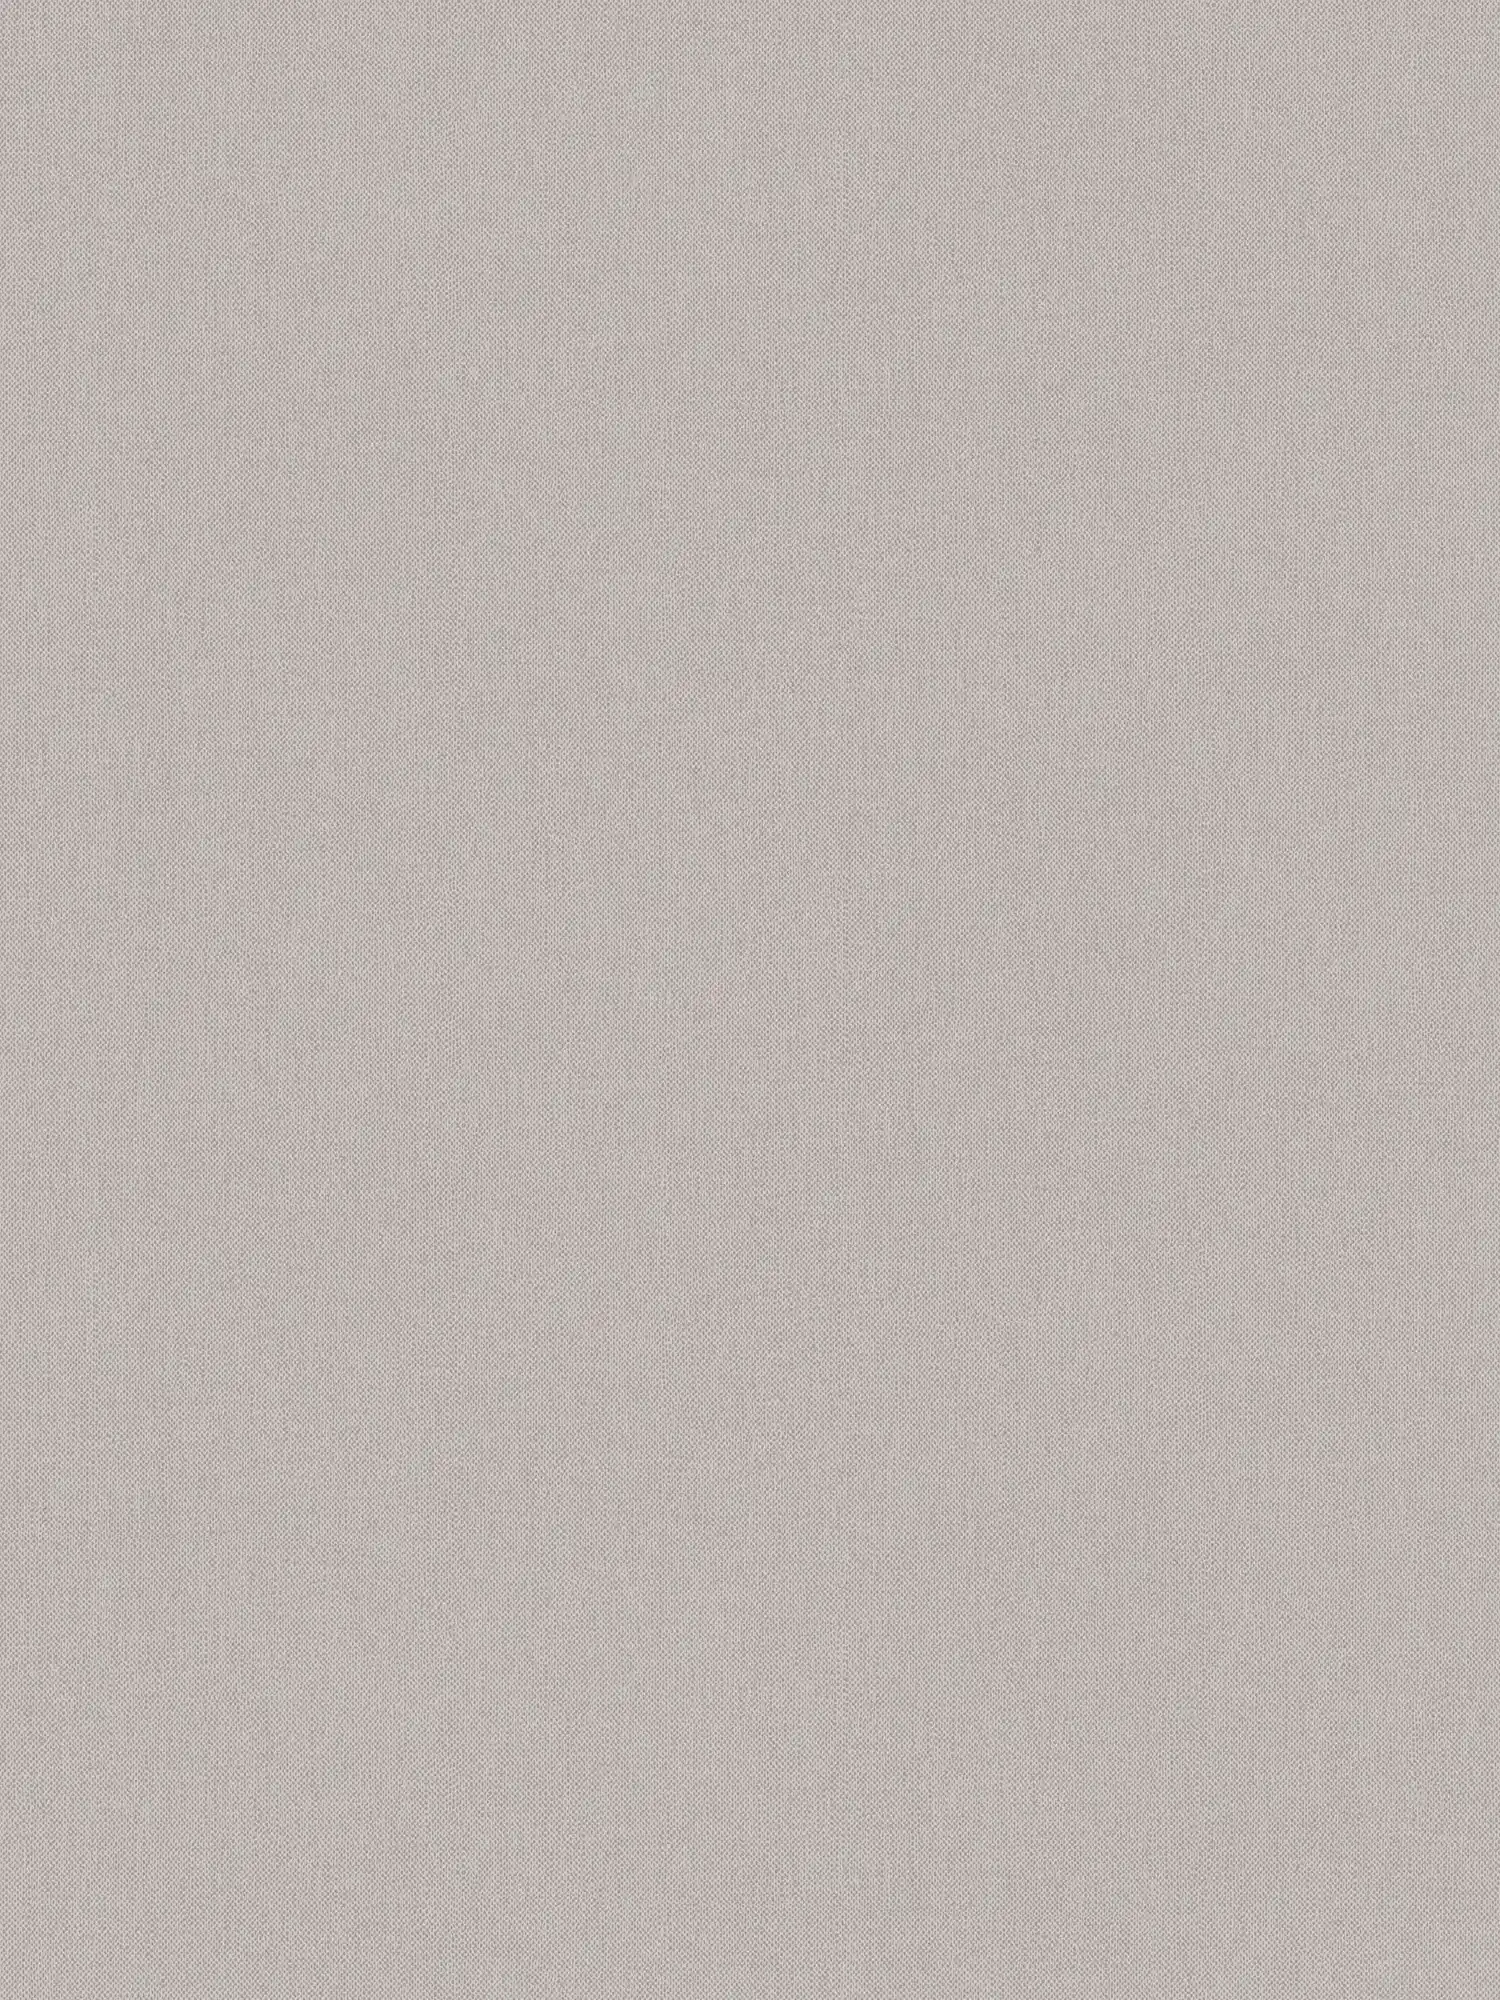 Carta da parati taupe tinta unita grigio beige con aspetto tessile - grigio, marrone
